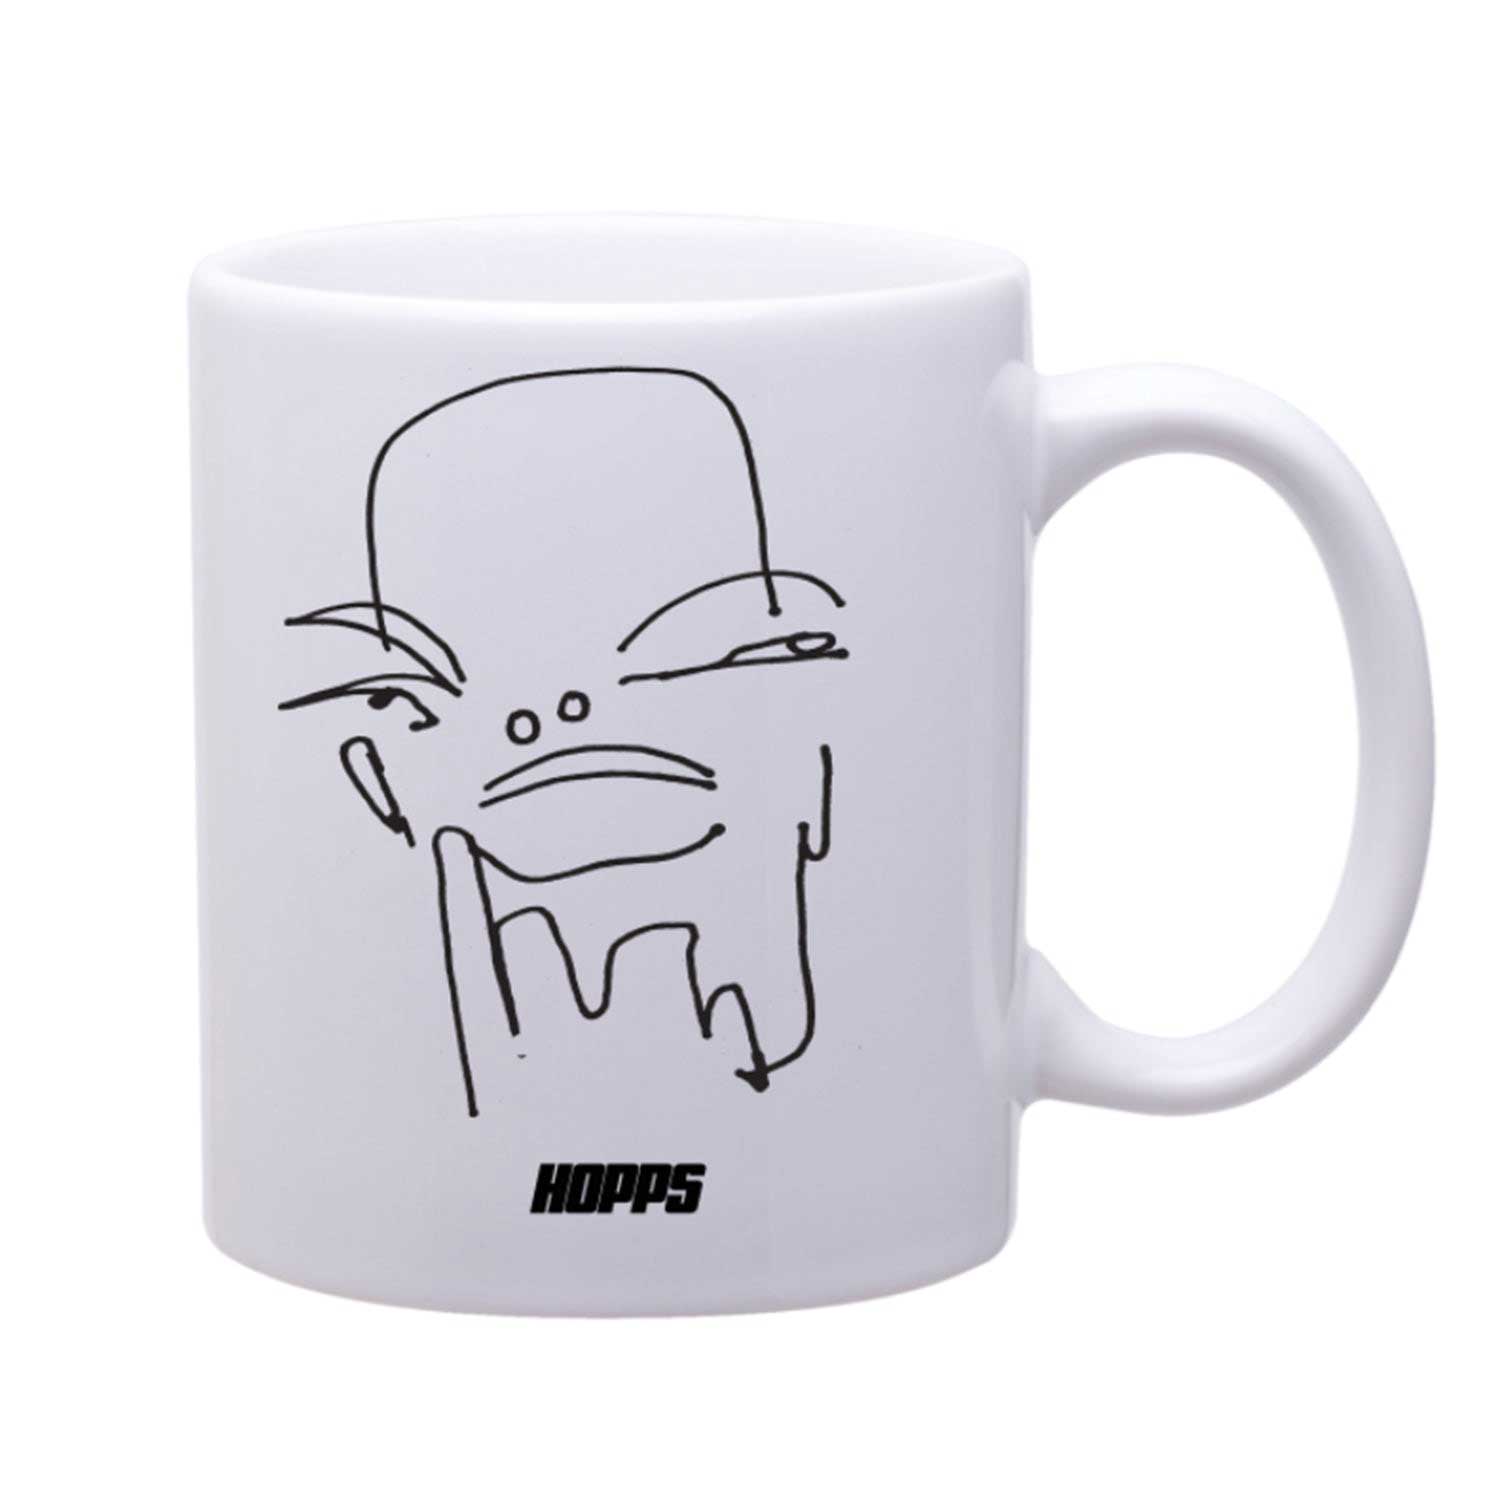 Hopps Dreamer Mug accessories Hopps 